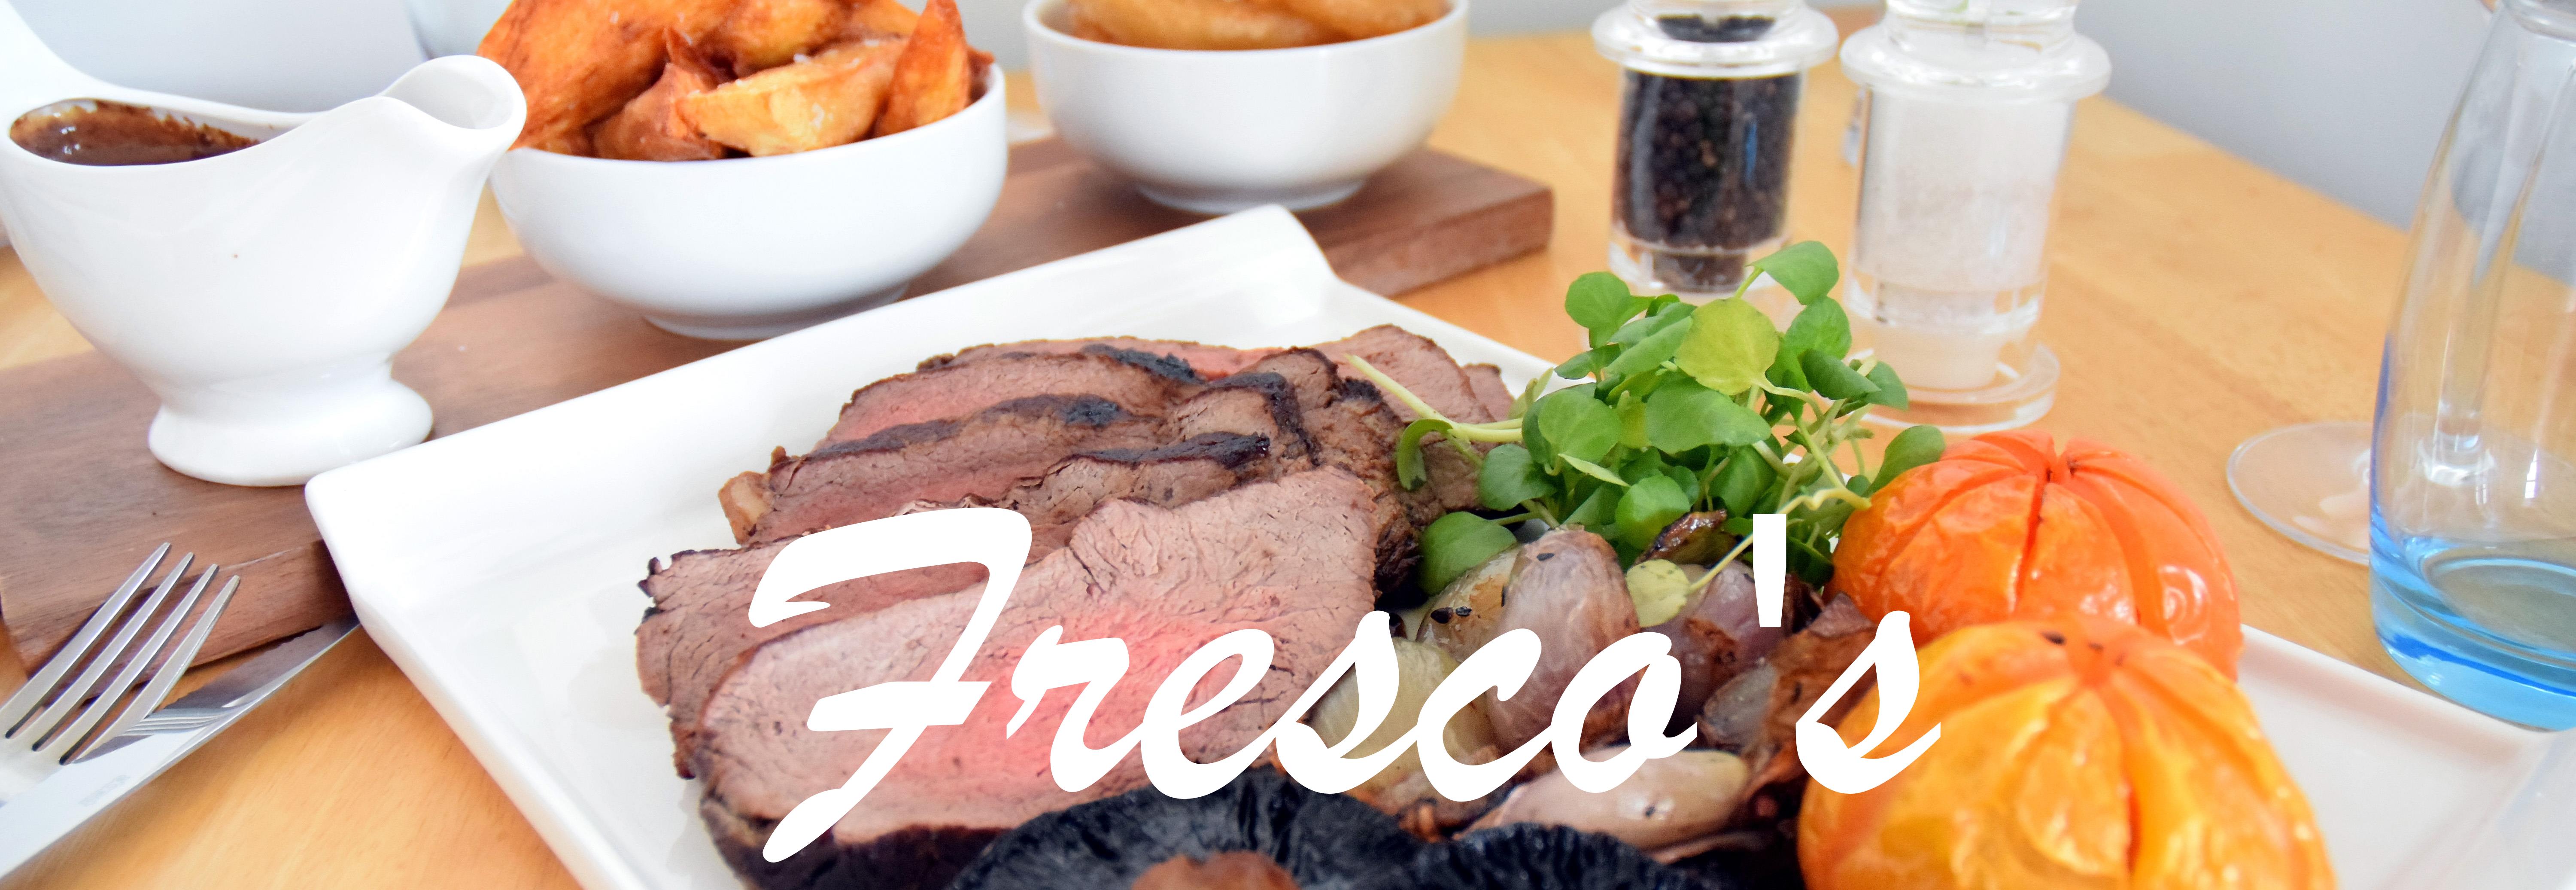 Fresco's Meats